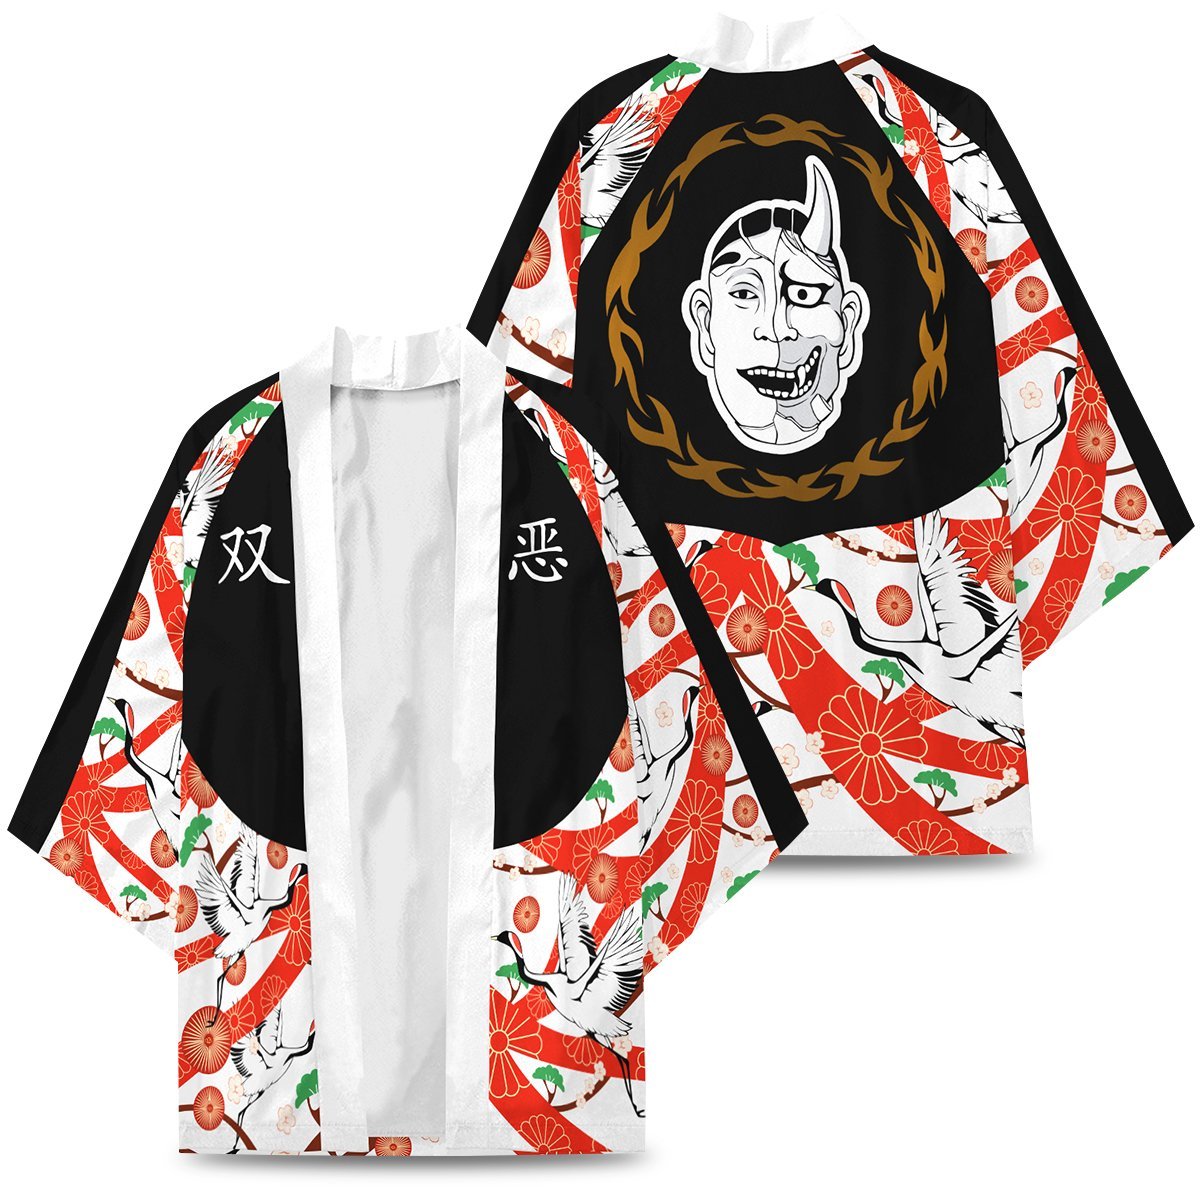 souya kawata kimono 382849 - Otaku Treat